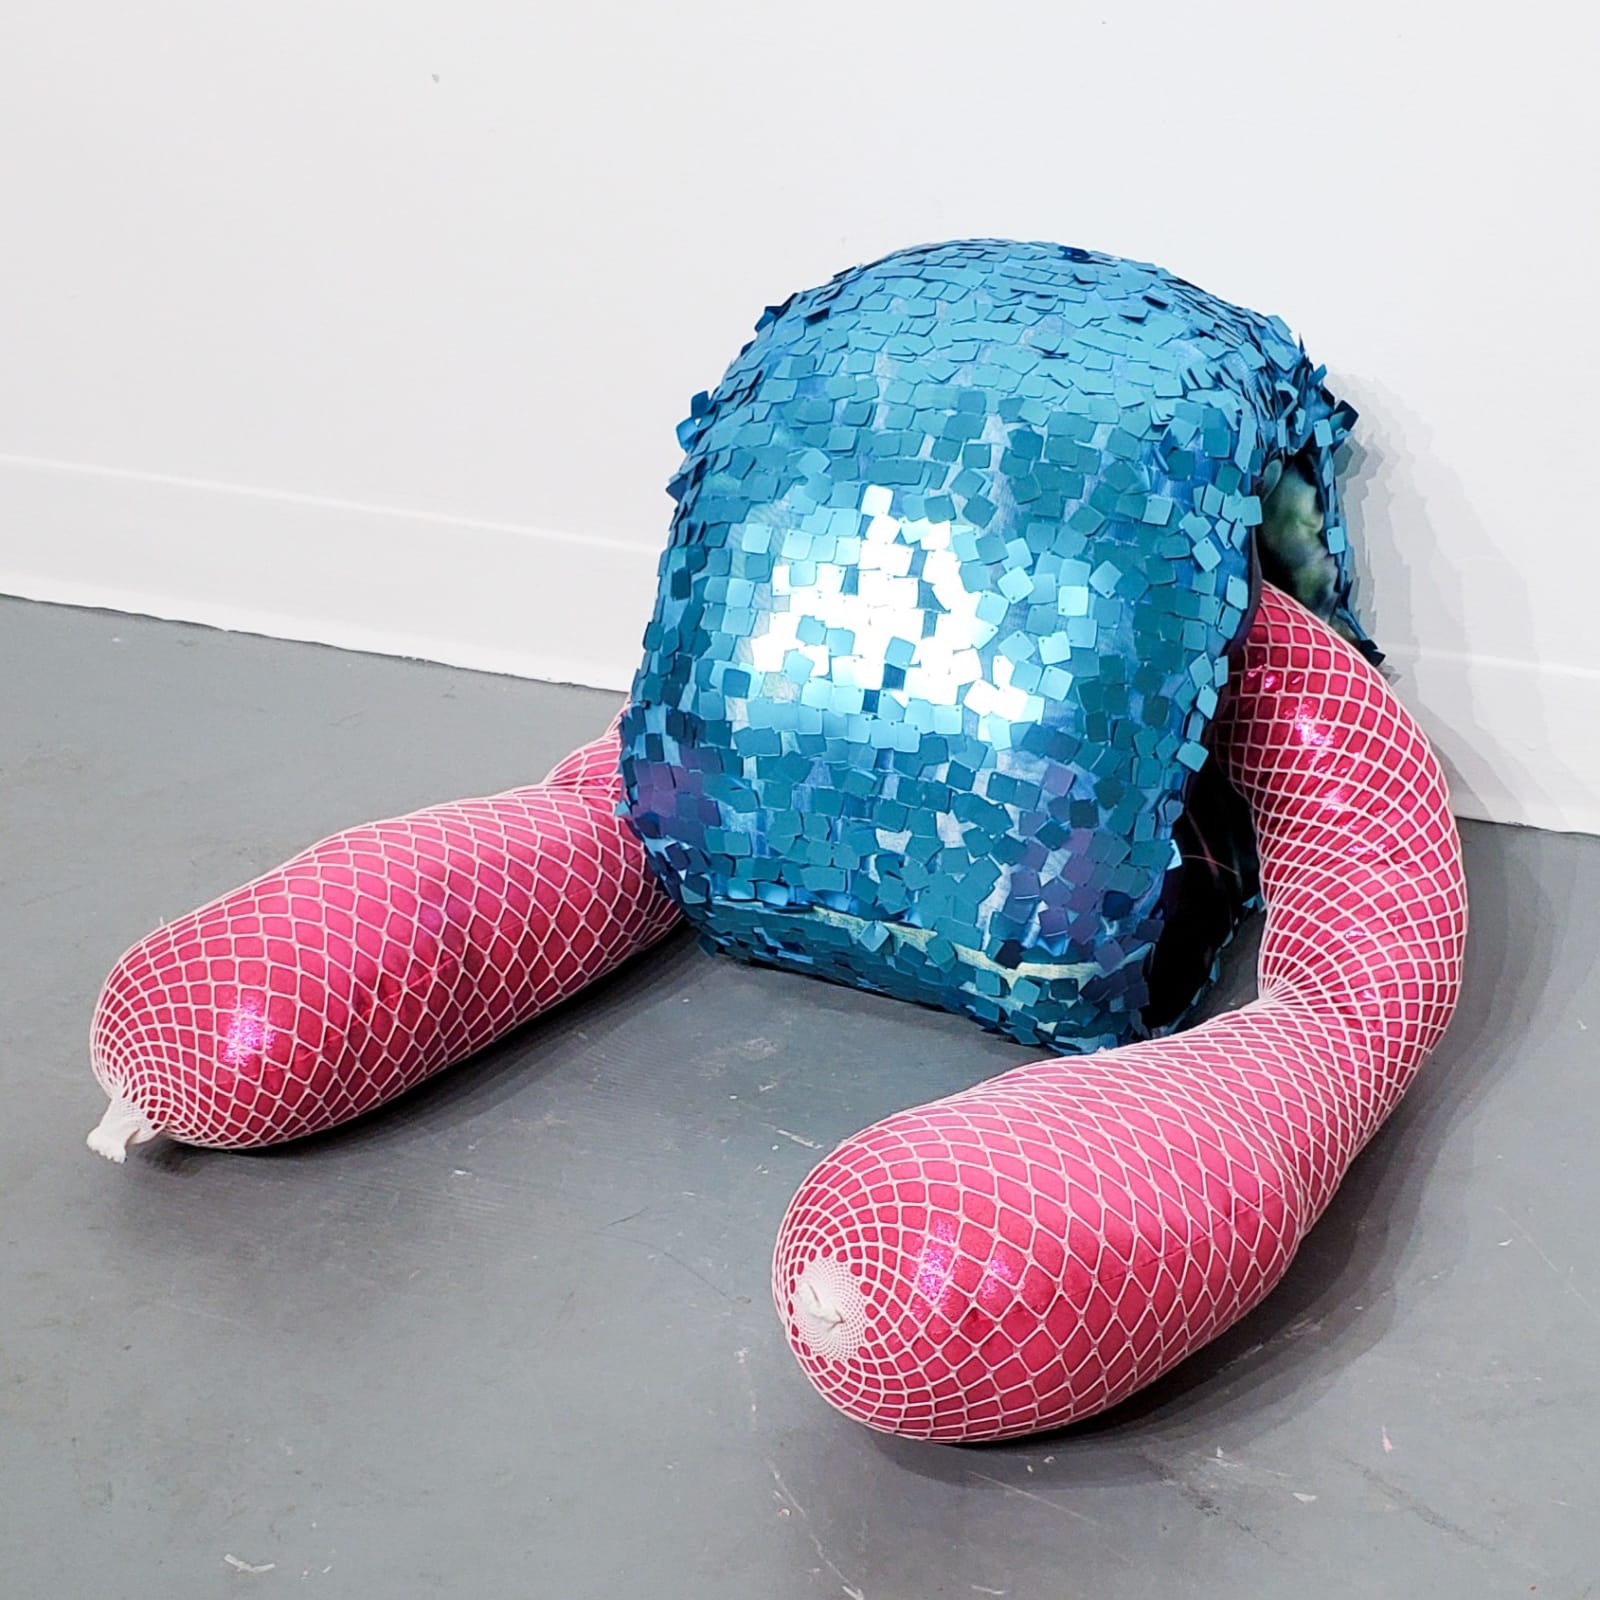 Allison Baker, Untitled: Blue and Pink Blob